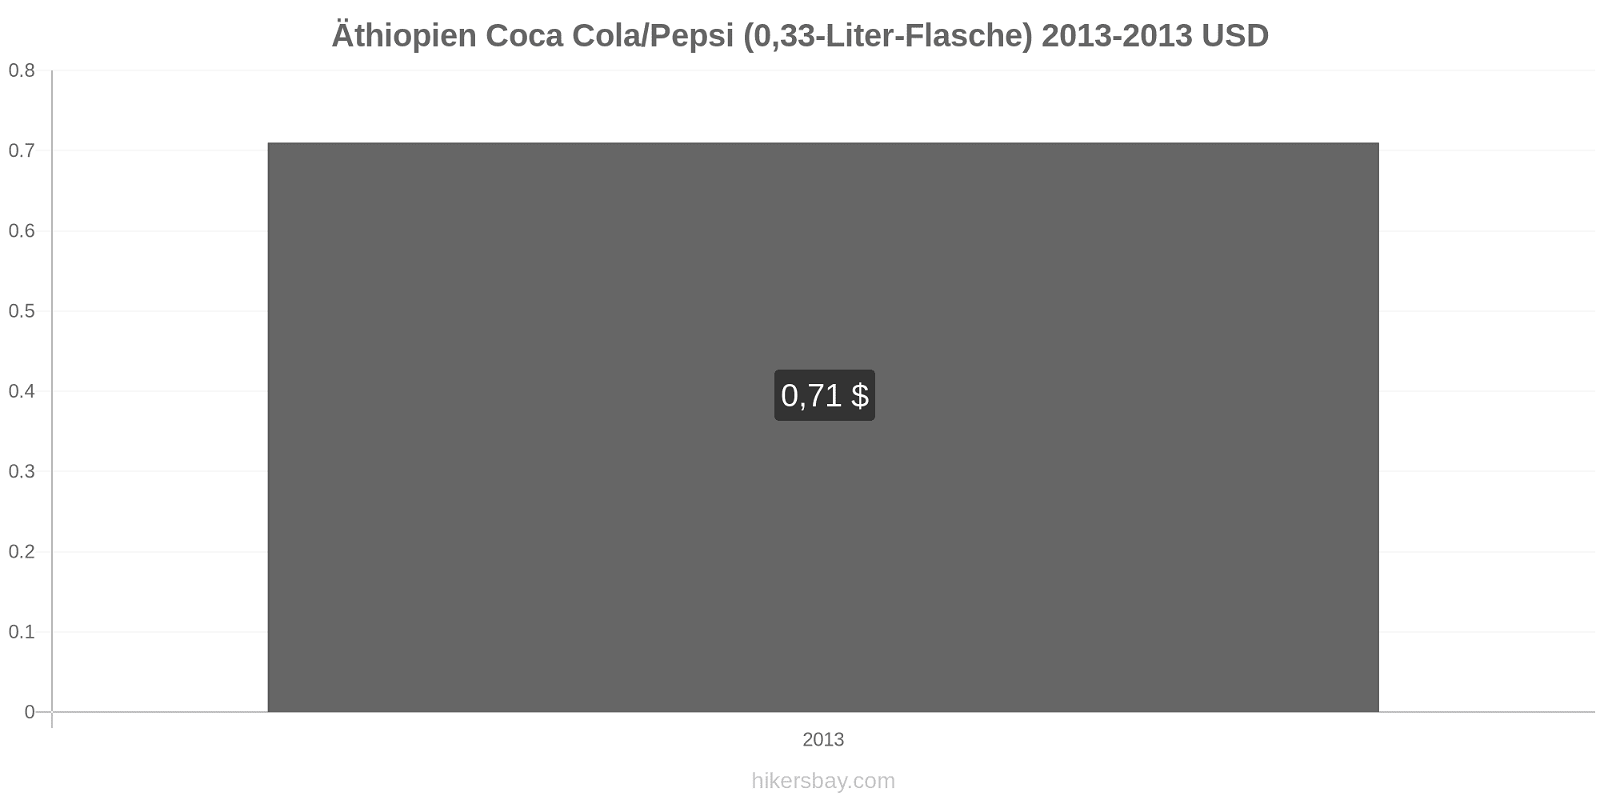 Äthiopien Preisänderungen Coke/Pepsi (0,33-Liter-Flasche) hikersbay.com